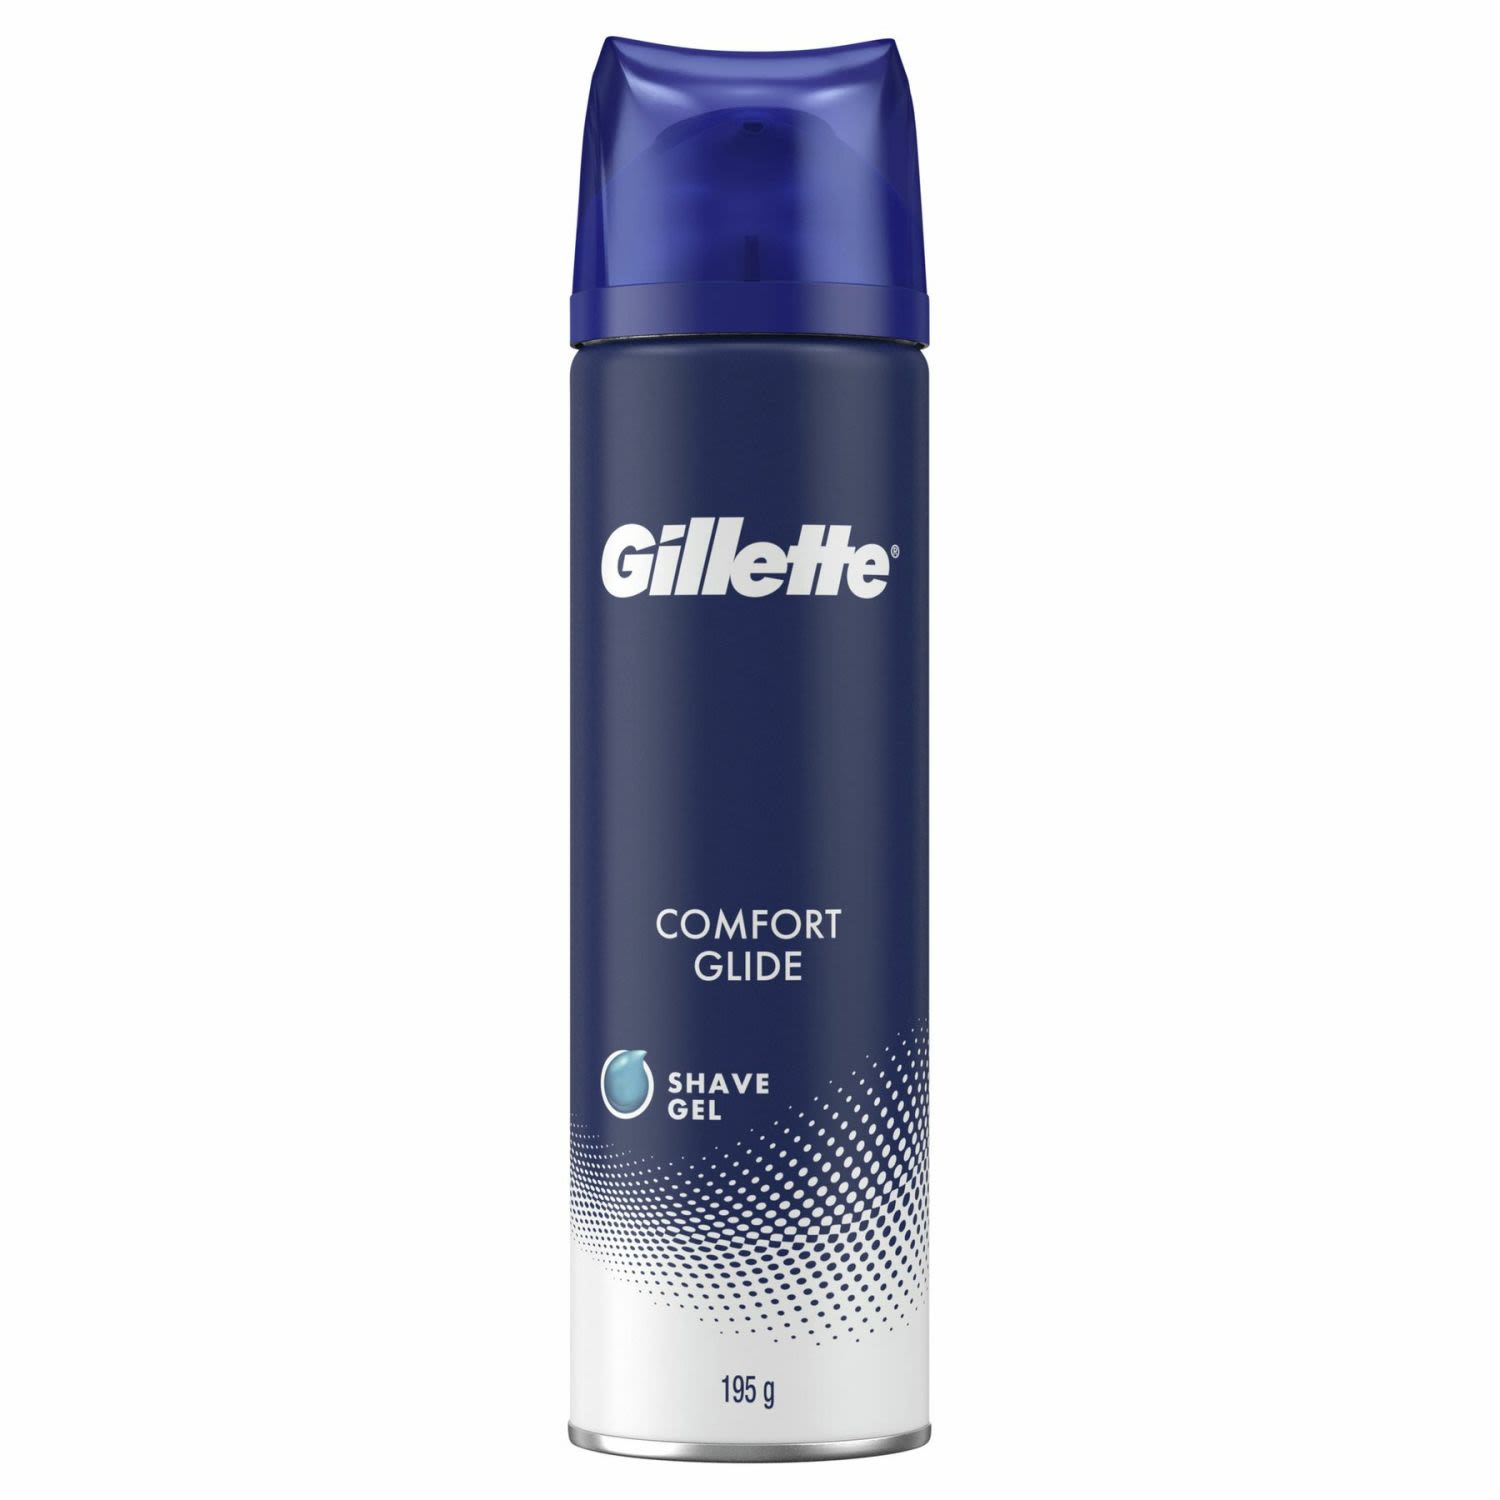 Gillette Comfort Glide Shave Gel, 195 Gram